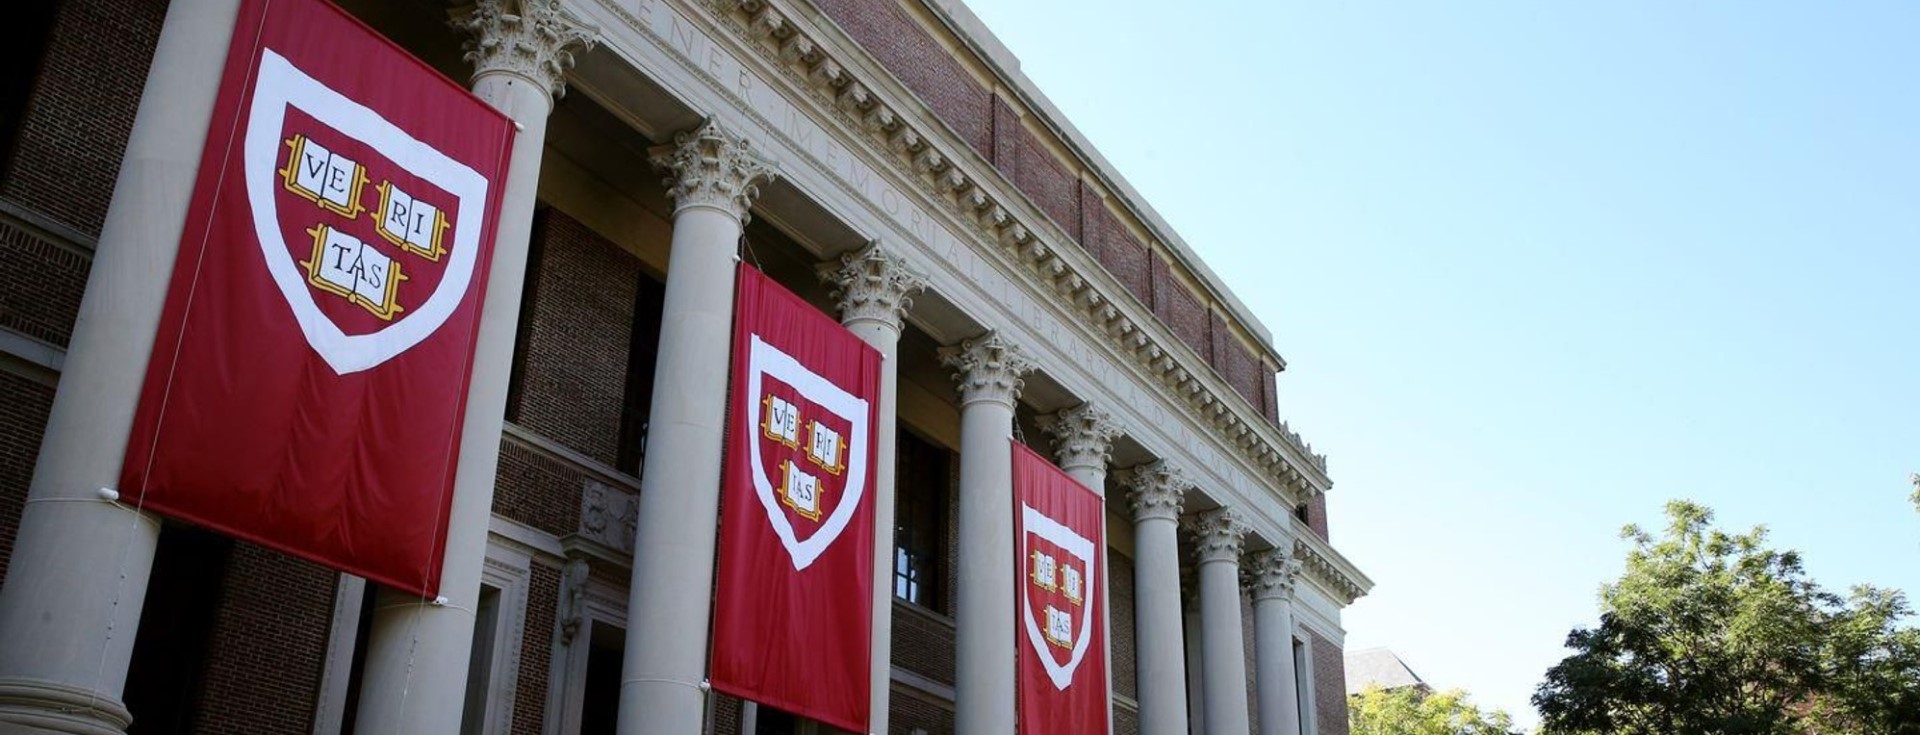 Harvardlı Bir Öğrenciye Göre, Mükemmel Mülakatın Sırrı